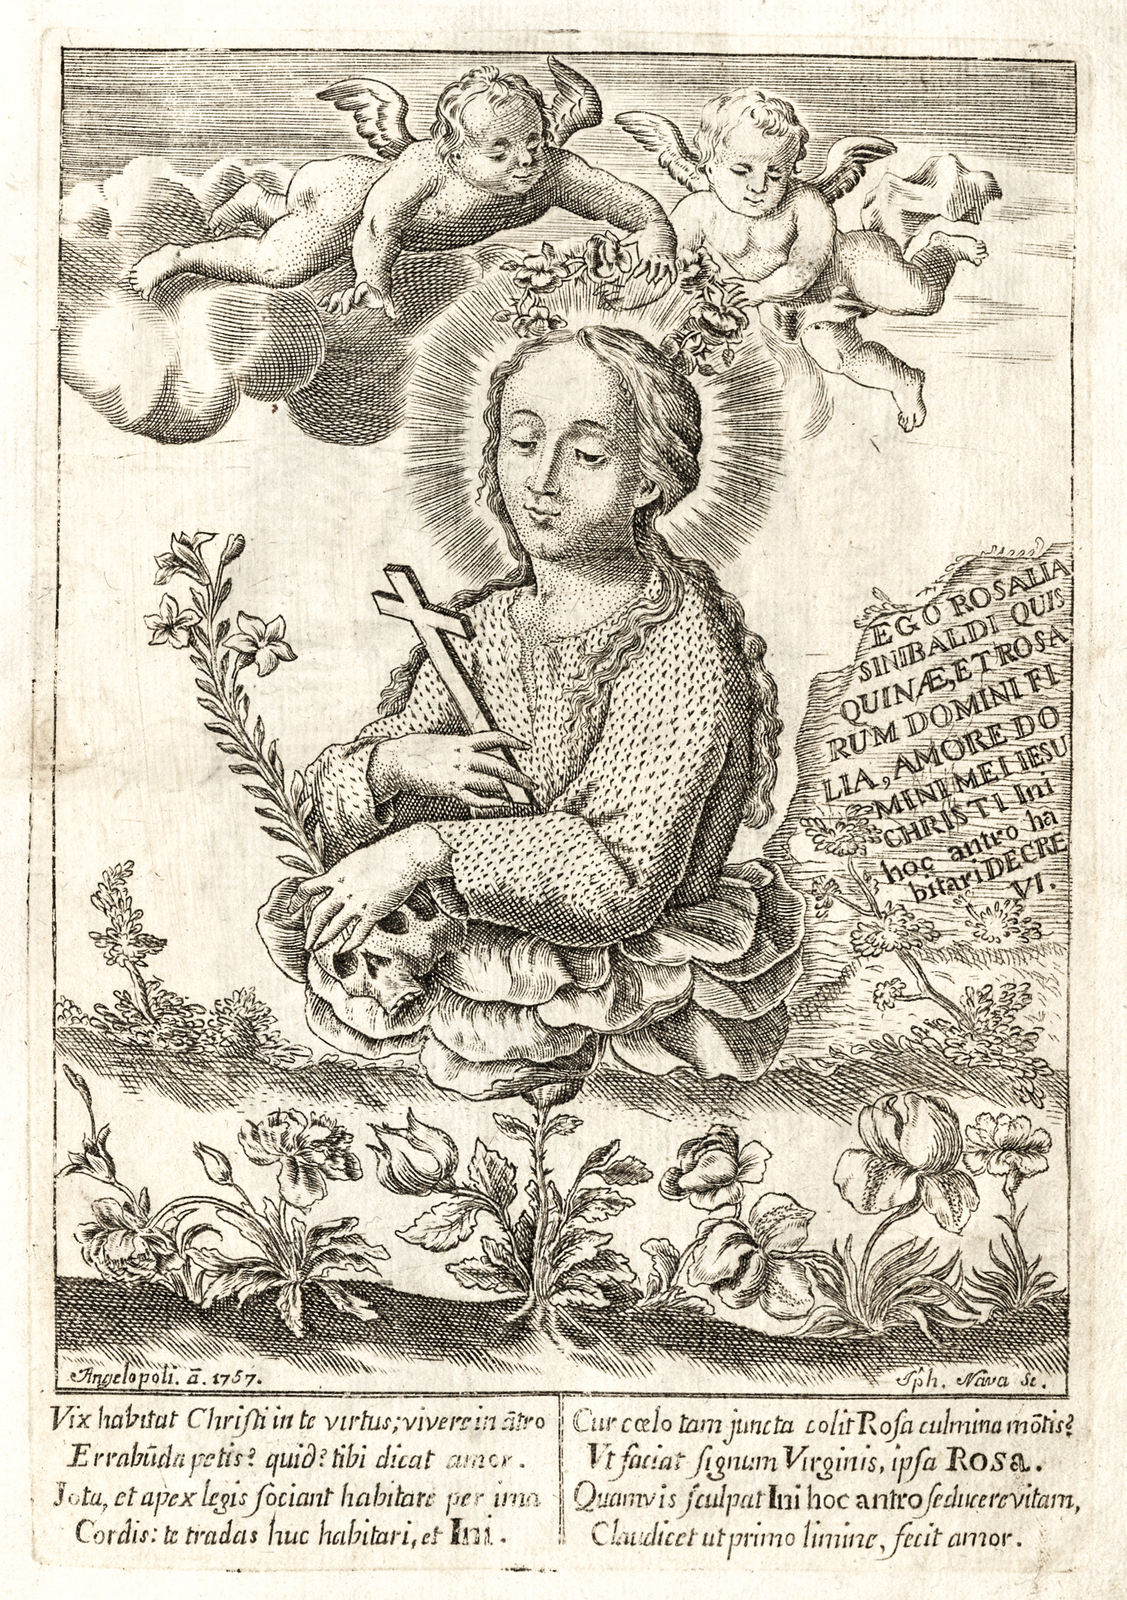 Vida y virtudes de la esclarecida Virgen y solitaria anacoreta Santa Rosalia, patrona de Palermo : Poema lyrico.<br />
Manuscrito,